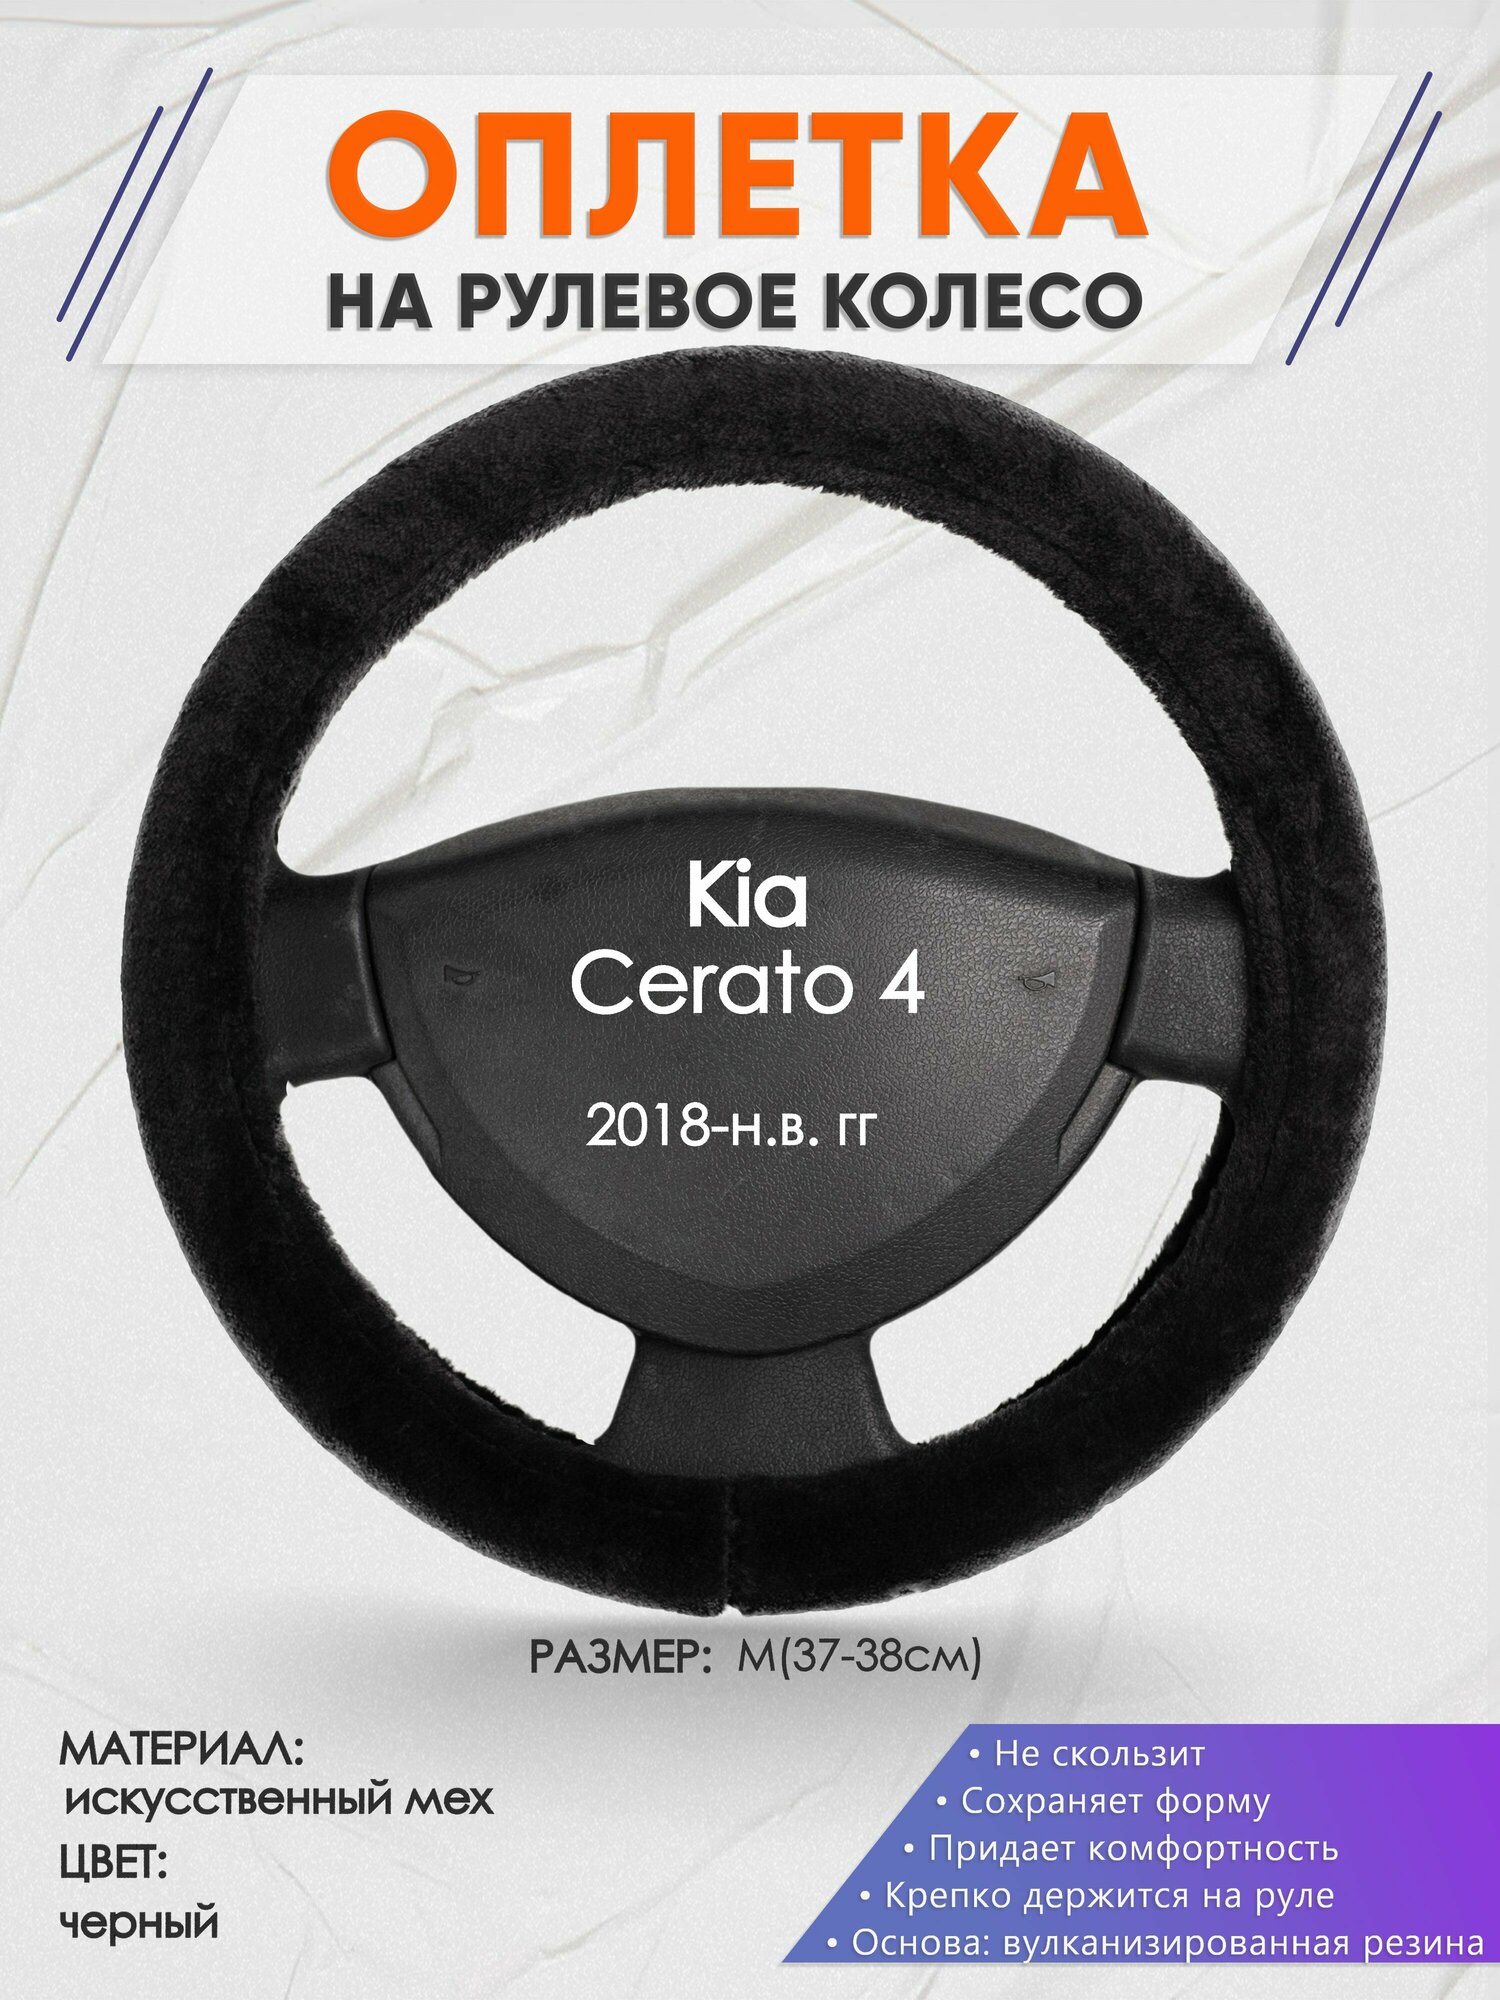 Оплетка на руль для Kia Cerato 4(Киа Церато 4) 2018-н. в, M(37-38см), Искусственный мех 45